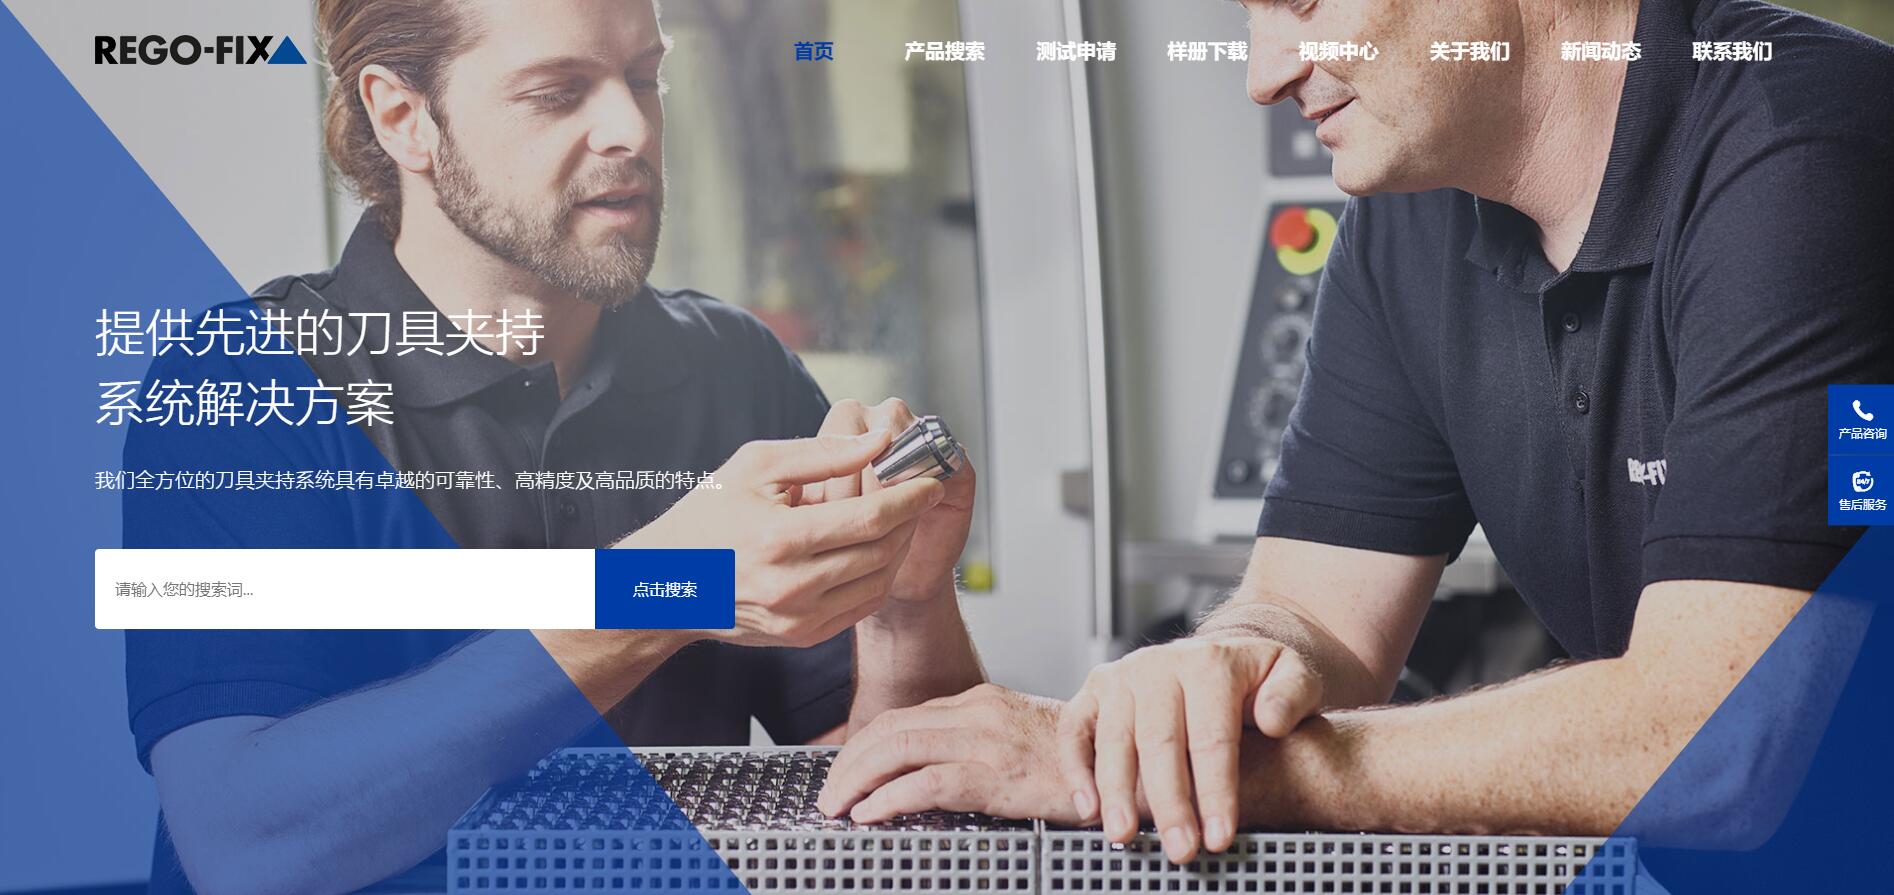 热烈庆祝瑞格费克斯国际品牌与彩投网app(中国)有限责任公司合作